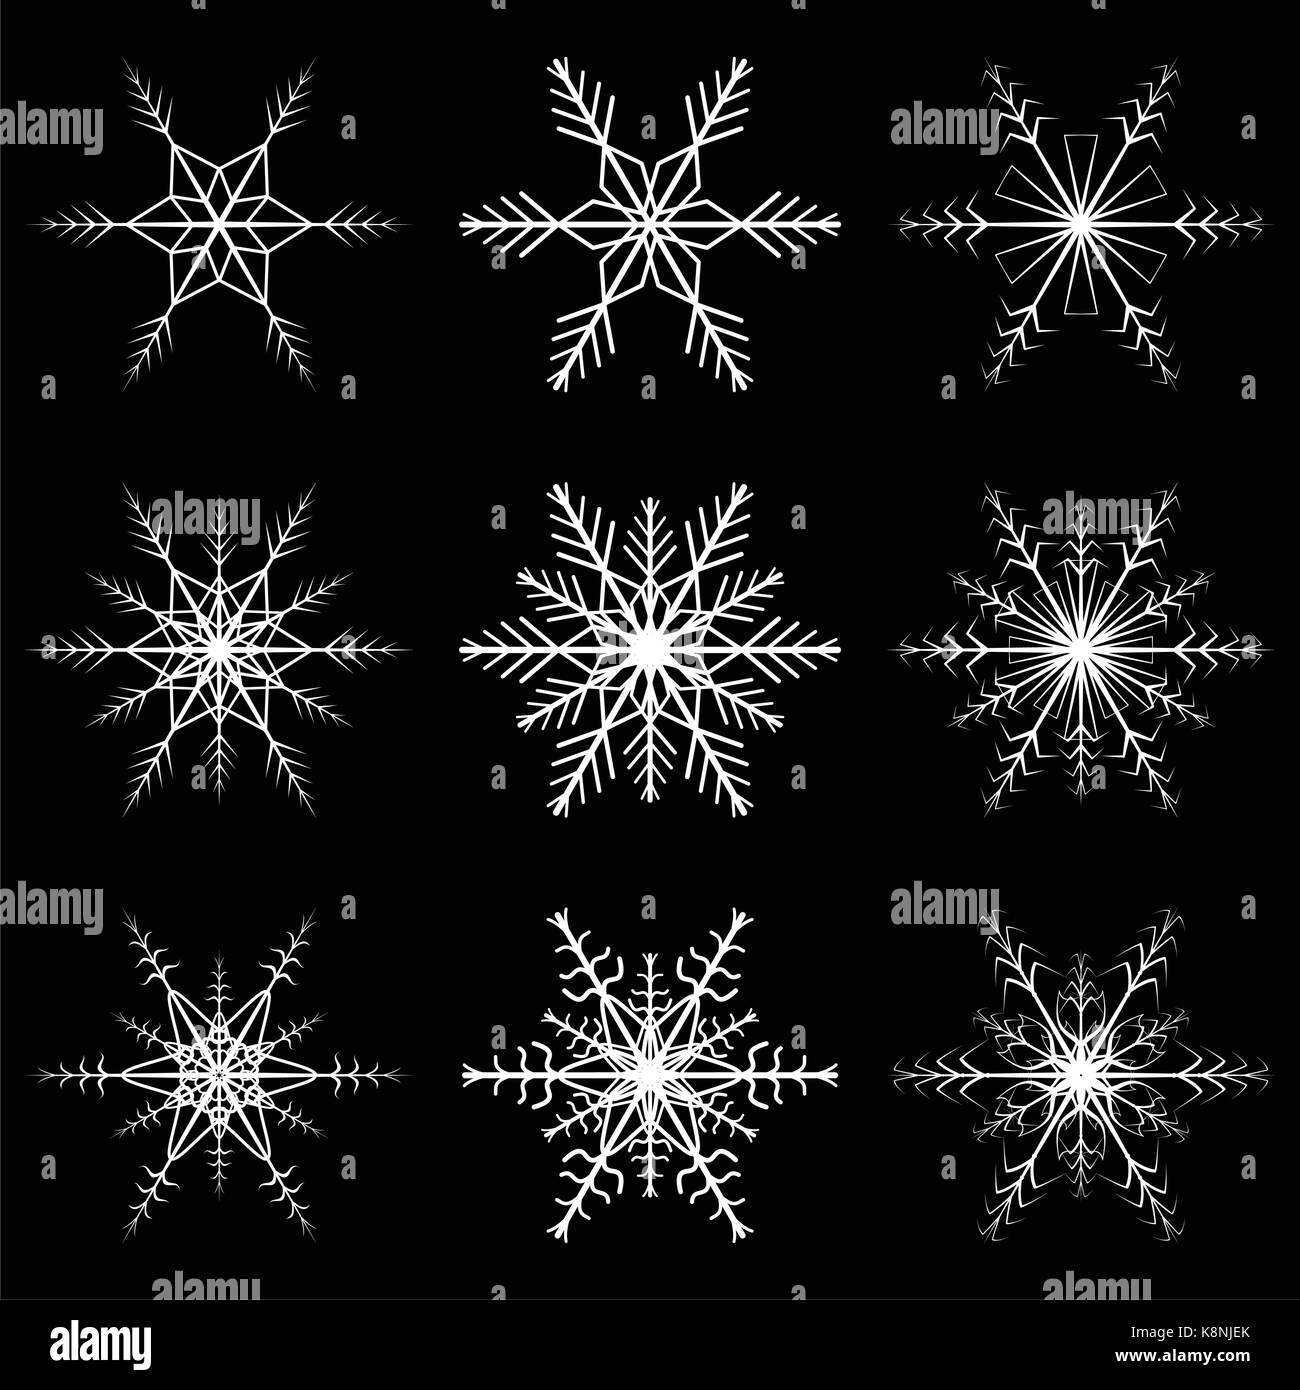 Schneeflocke vektor Symbol Silhouette Design. Weihnachten Winter Symbol Abbildung auf dem schwarzen Hintergrund isoliert. Stock Vektor